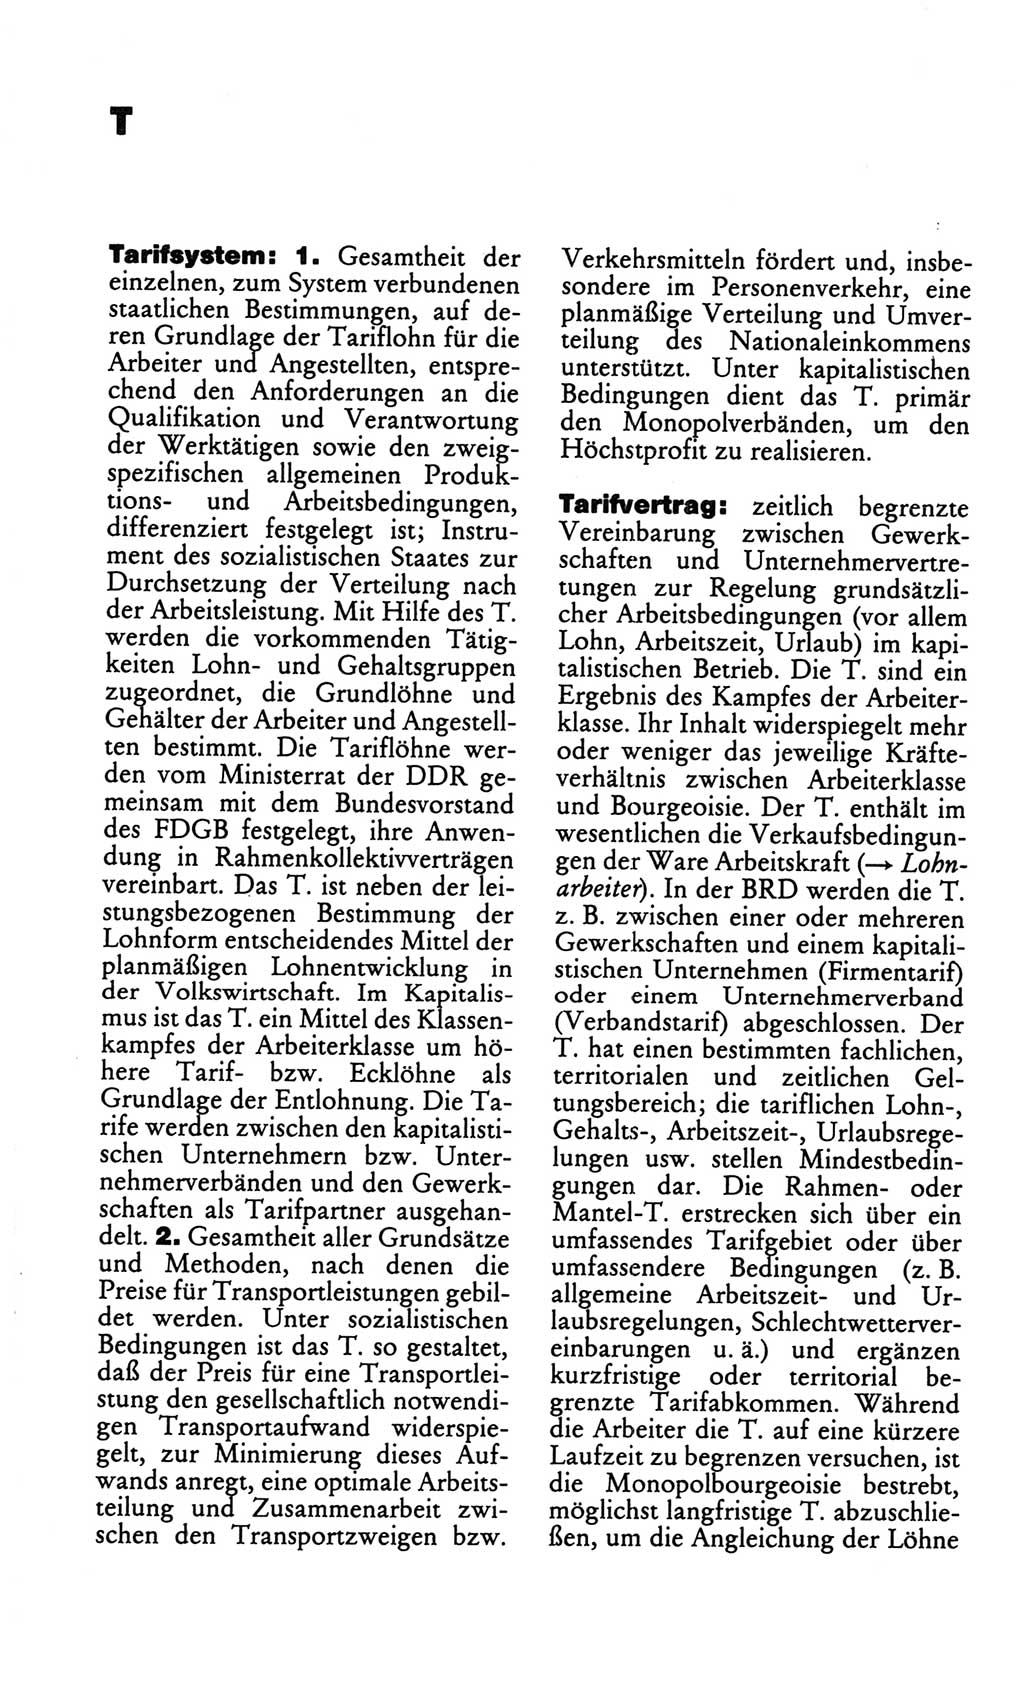 Kleines politisches Wörterbuch [Deutsche Demokratische Republik (DDR)] 1986, Seite 946 (Kl. pol. Wb. DDR 1986, S. 946)